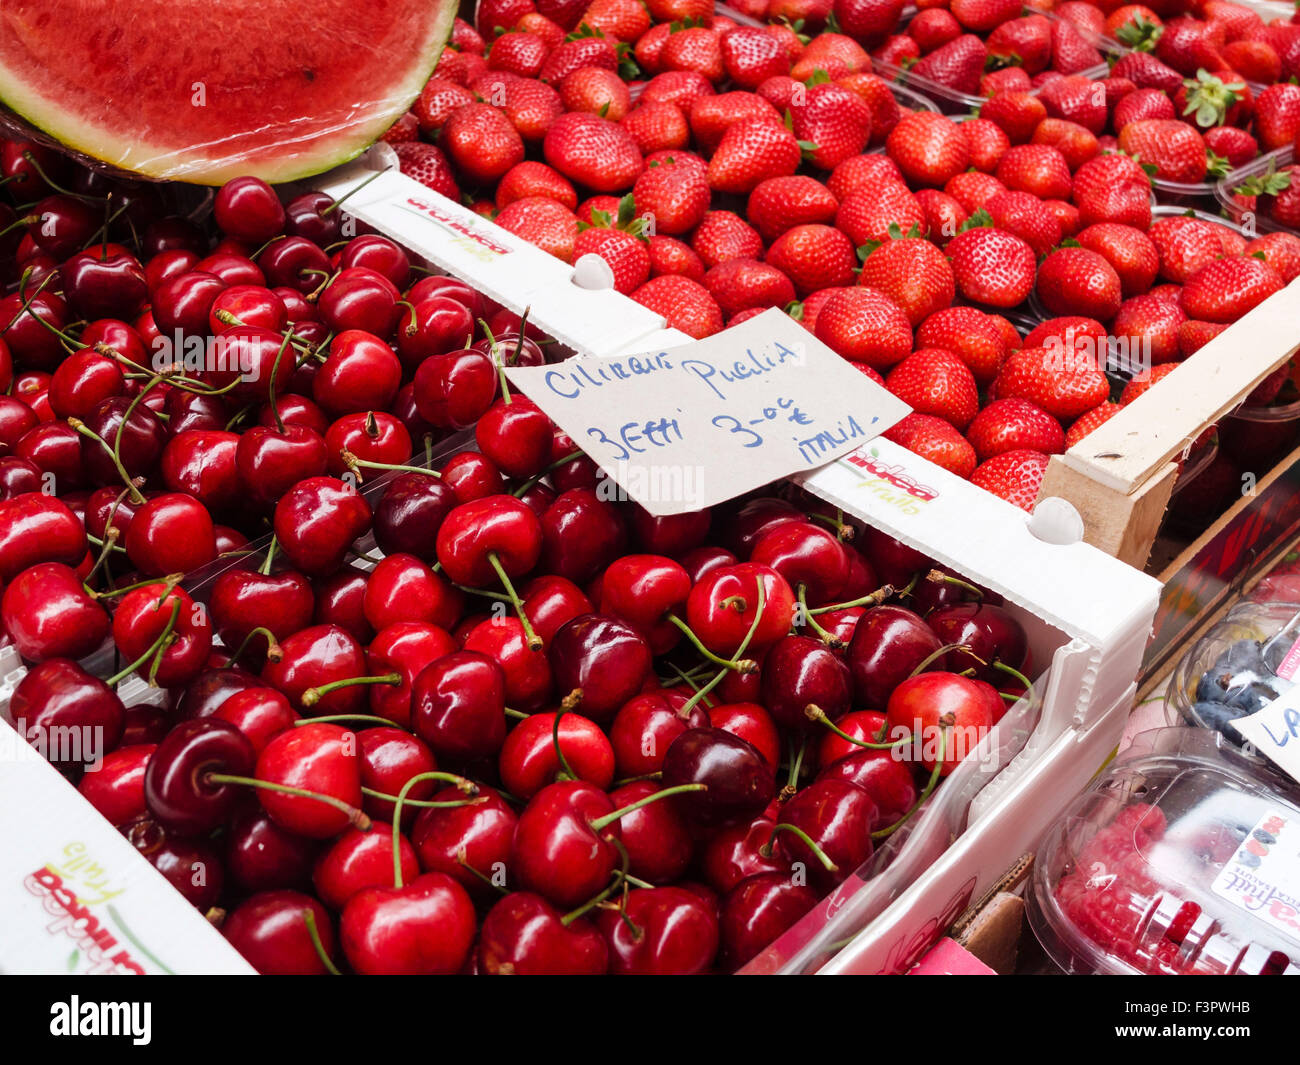 Italien, Region Emilia-Romagna Bologna-Markt Lebensmittel Verkäufer. Obst- und Gemüsemarkt. Kirschen aus Apulien, Erdbeeren, Wassermelone. Stockfoto